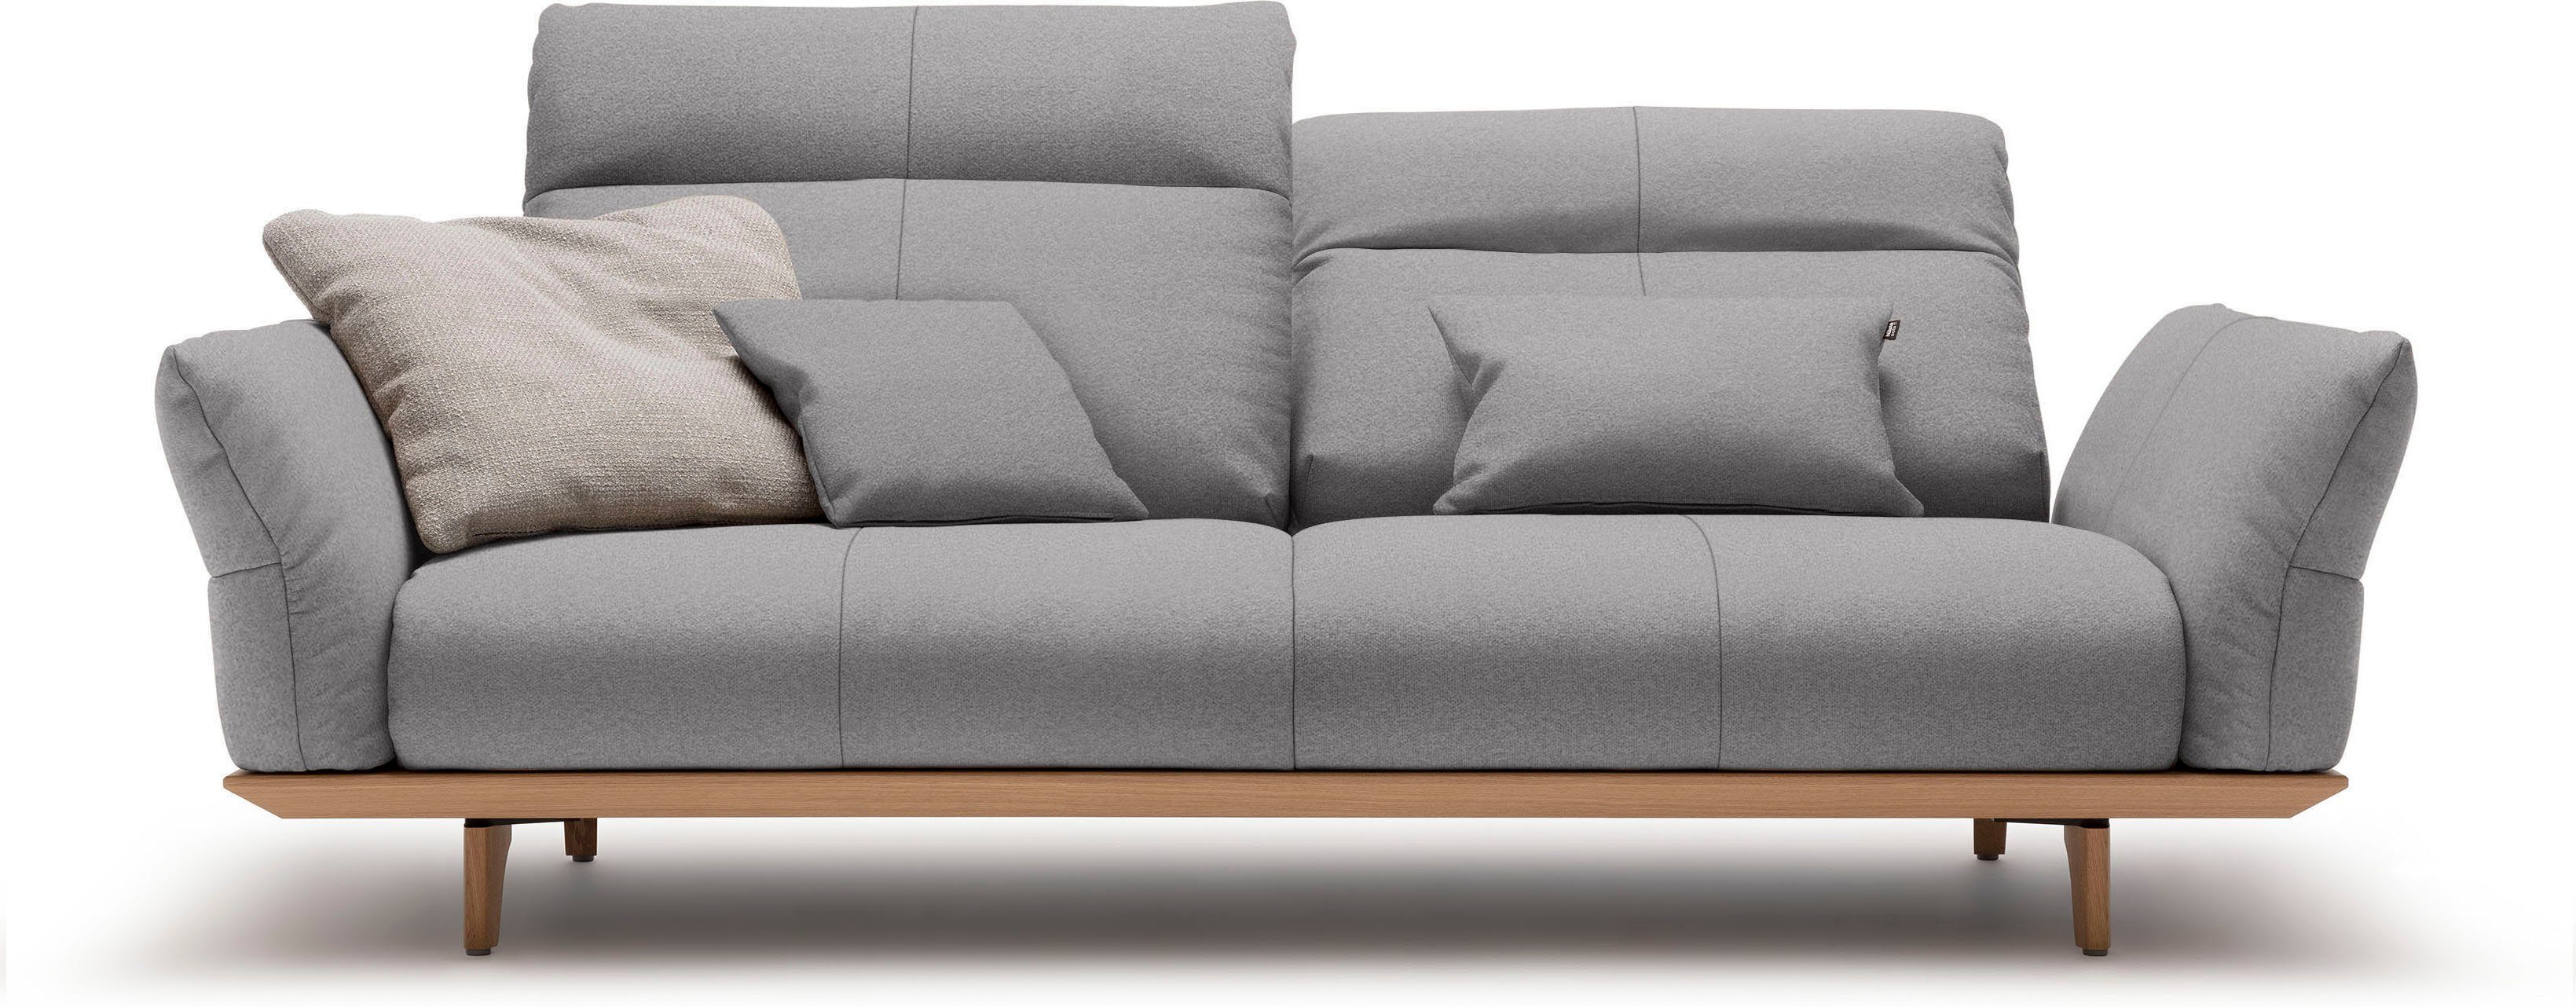 hülsta sofa 3-Sitzer hs.460, Sockel in Eiche, Füße Eiche natur, Breite 208 cm